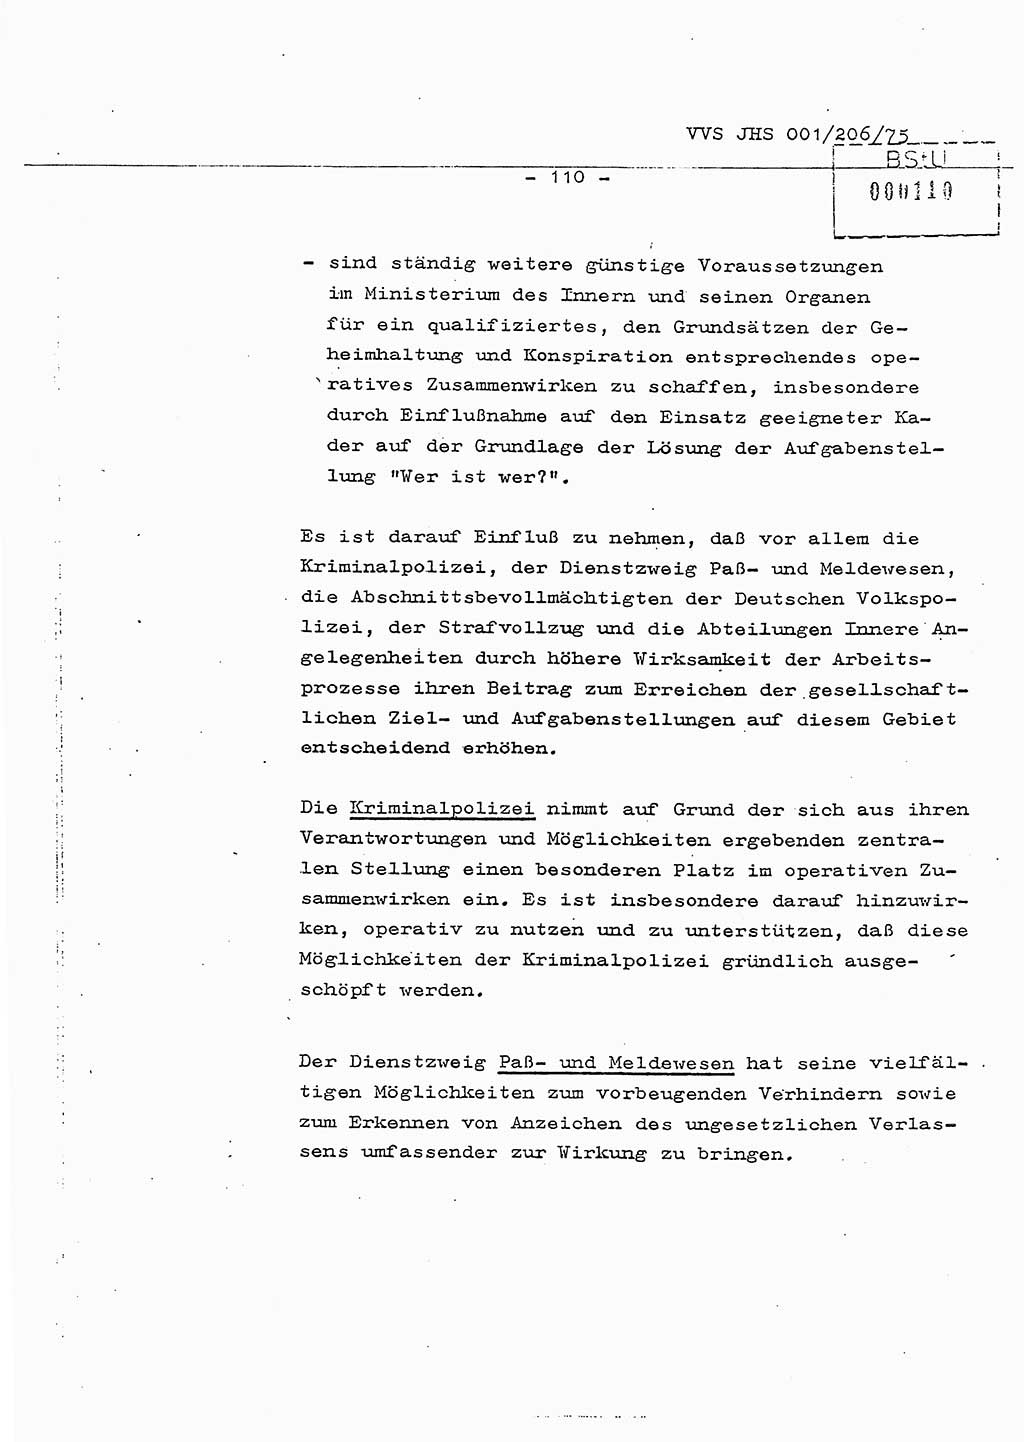 Dissertation Generalmajor Manfred Hummitzsch (Leiter der BV Leipzig), Generalmajor Heinz Fiedler (HA Ⅵ), Oberst Rolf Fister (HA Ⅸ), Ministerium für Staatssicherheit (MfS) [Deutsche Demokratische Republik (DDR)], Juristische Hochschule (JHS), Vertrauliche Verschlußsache (VVS) 001-206/75, Potsdam 1975, Seite 110 (Diss. MfS DDR JHS VVS 001-206/75 1975, S. 110)